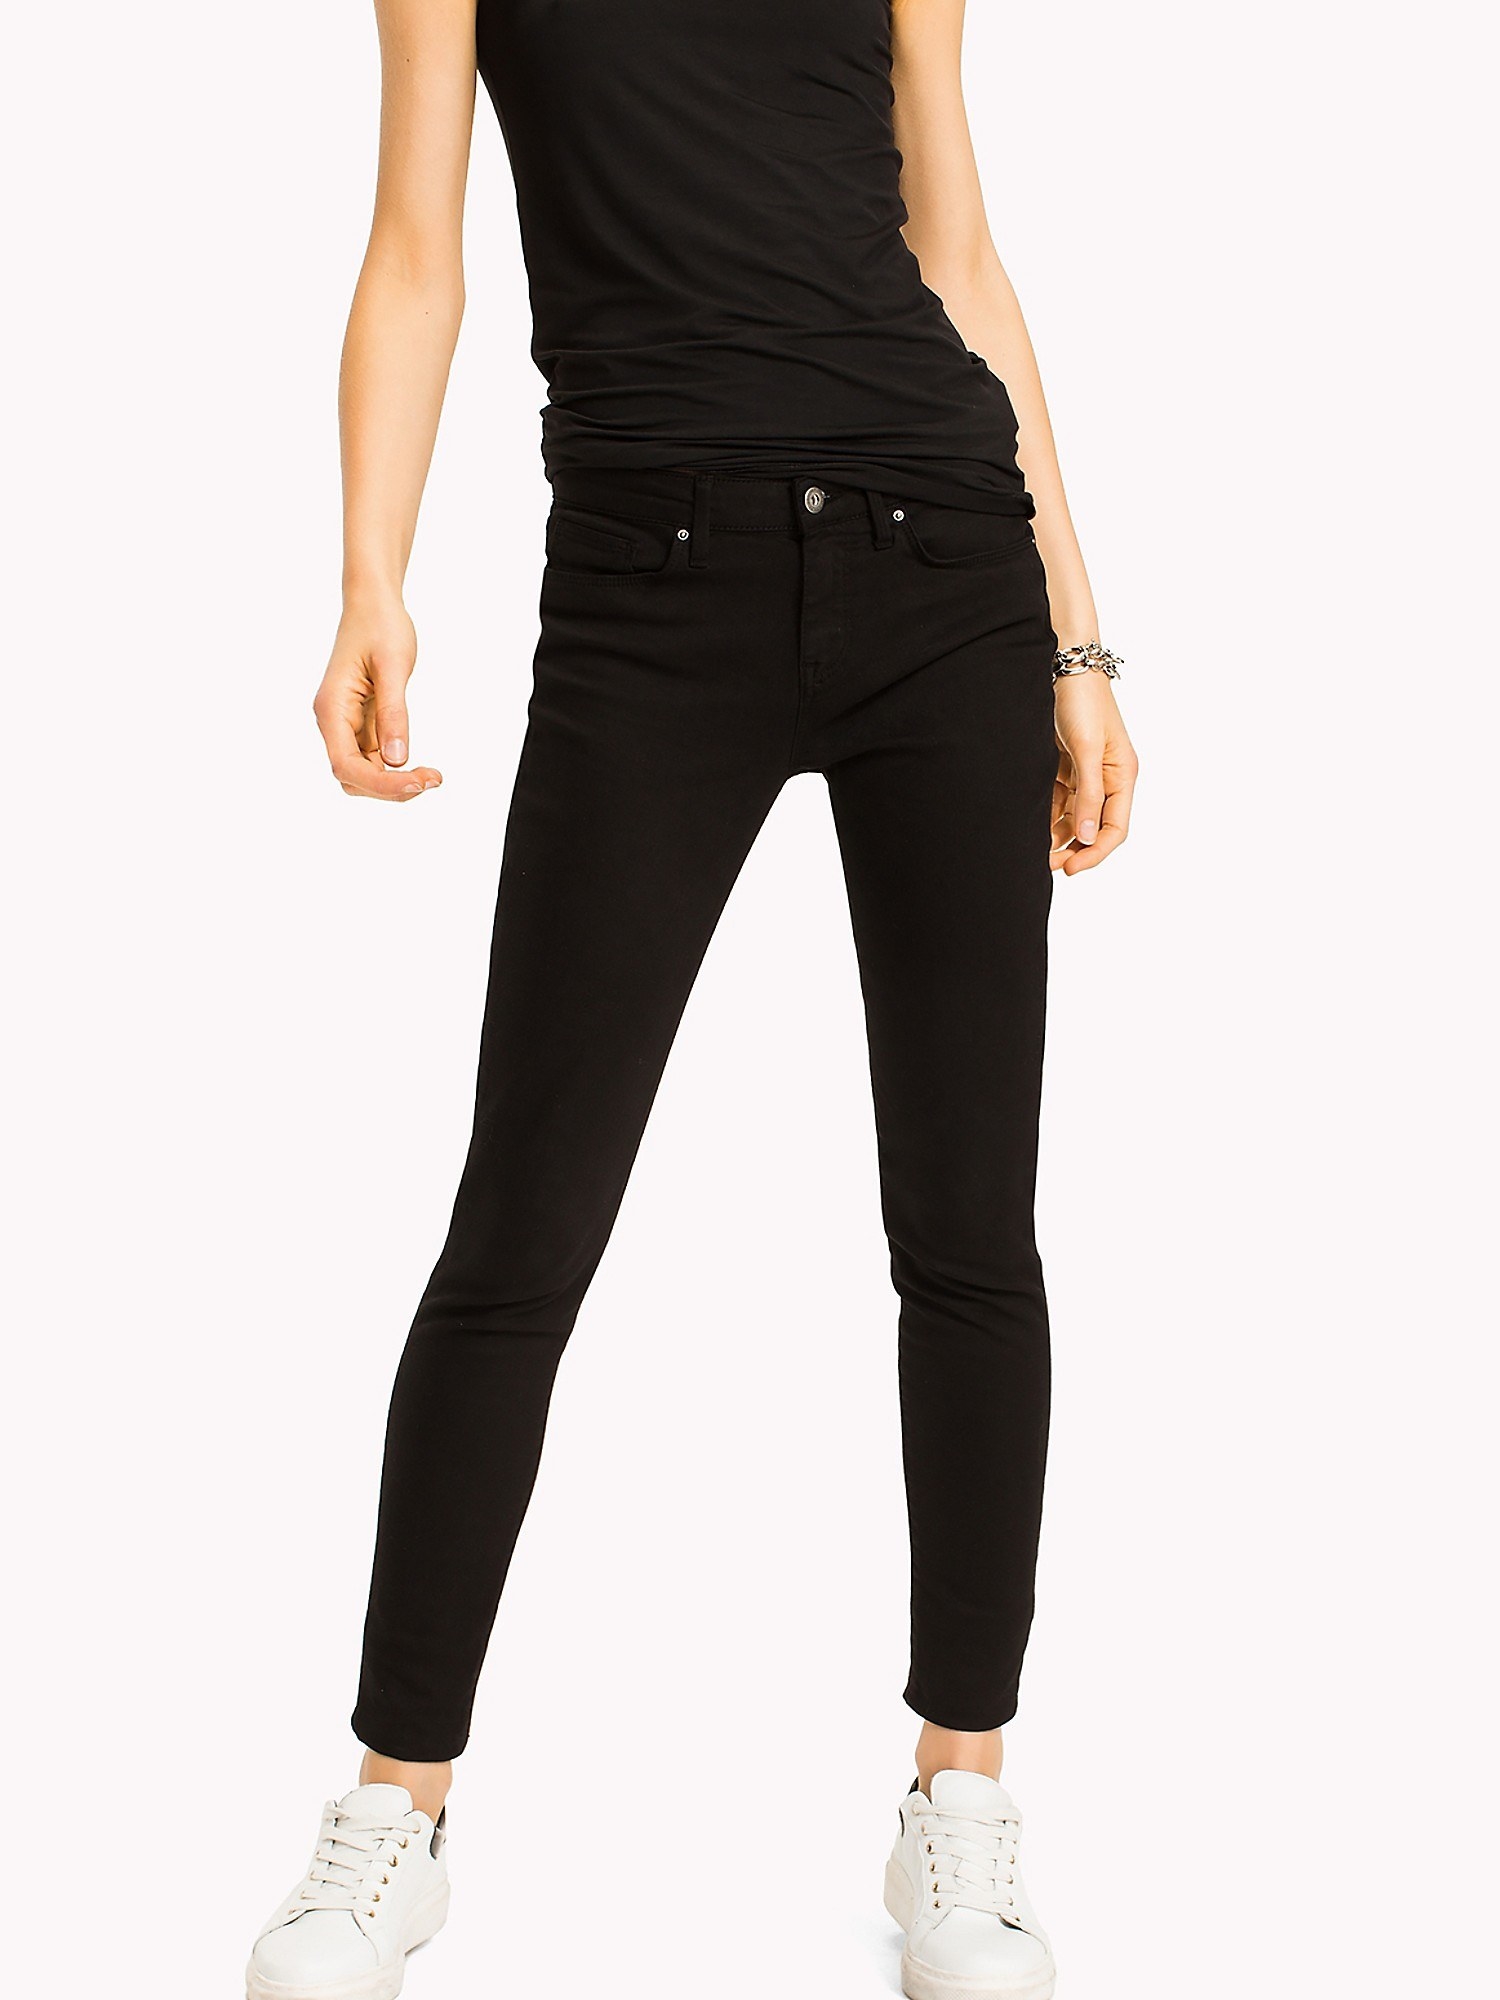 Model wearing black Jegging Fit Jean